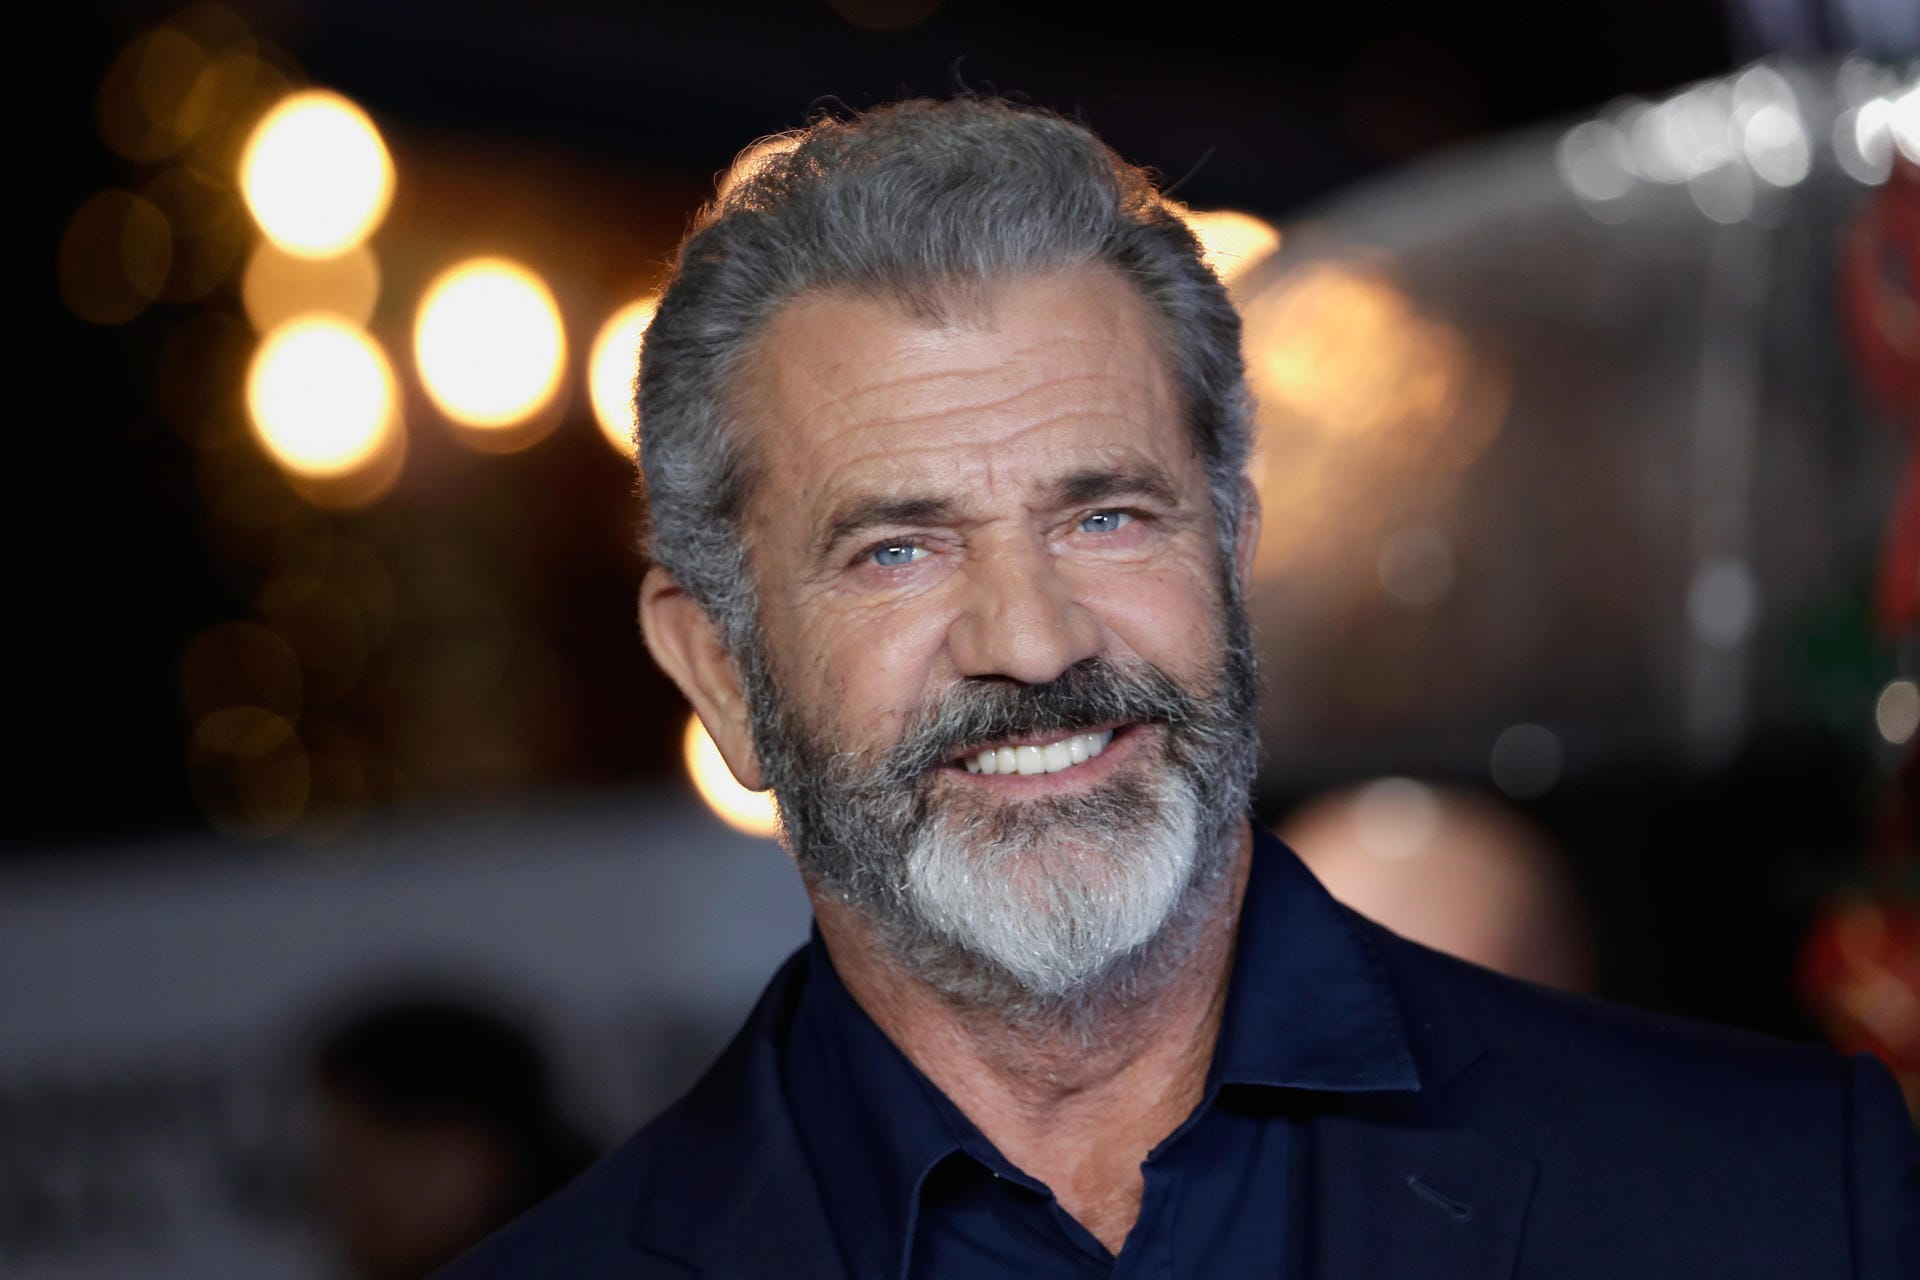 Mel Gibson bekam beim Kirchgang Besuch von einem Obdachlosen. Dieser war der Meinung, dass er von Gott entsandt wurde, um den Schauspieler zu heilen. Folge: drei Jahre Haft und Psychotherapie.